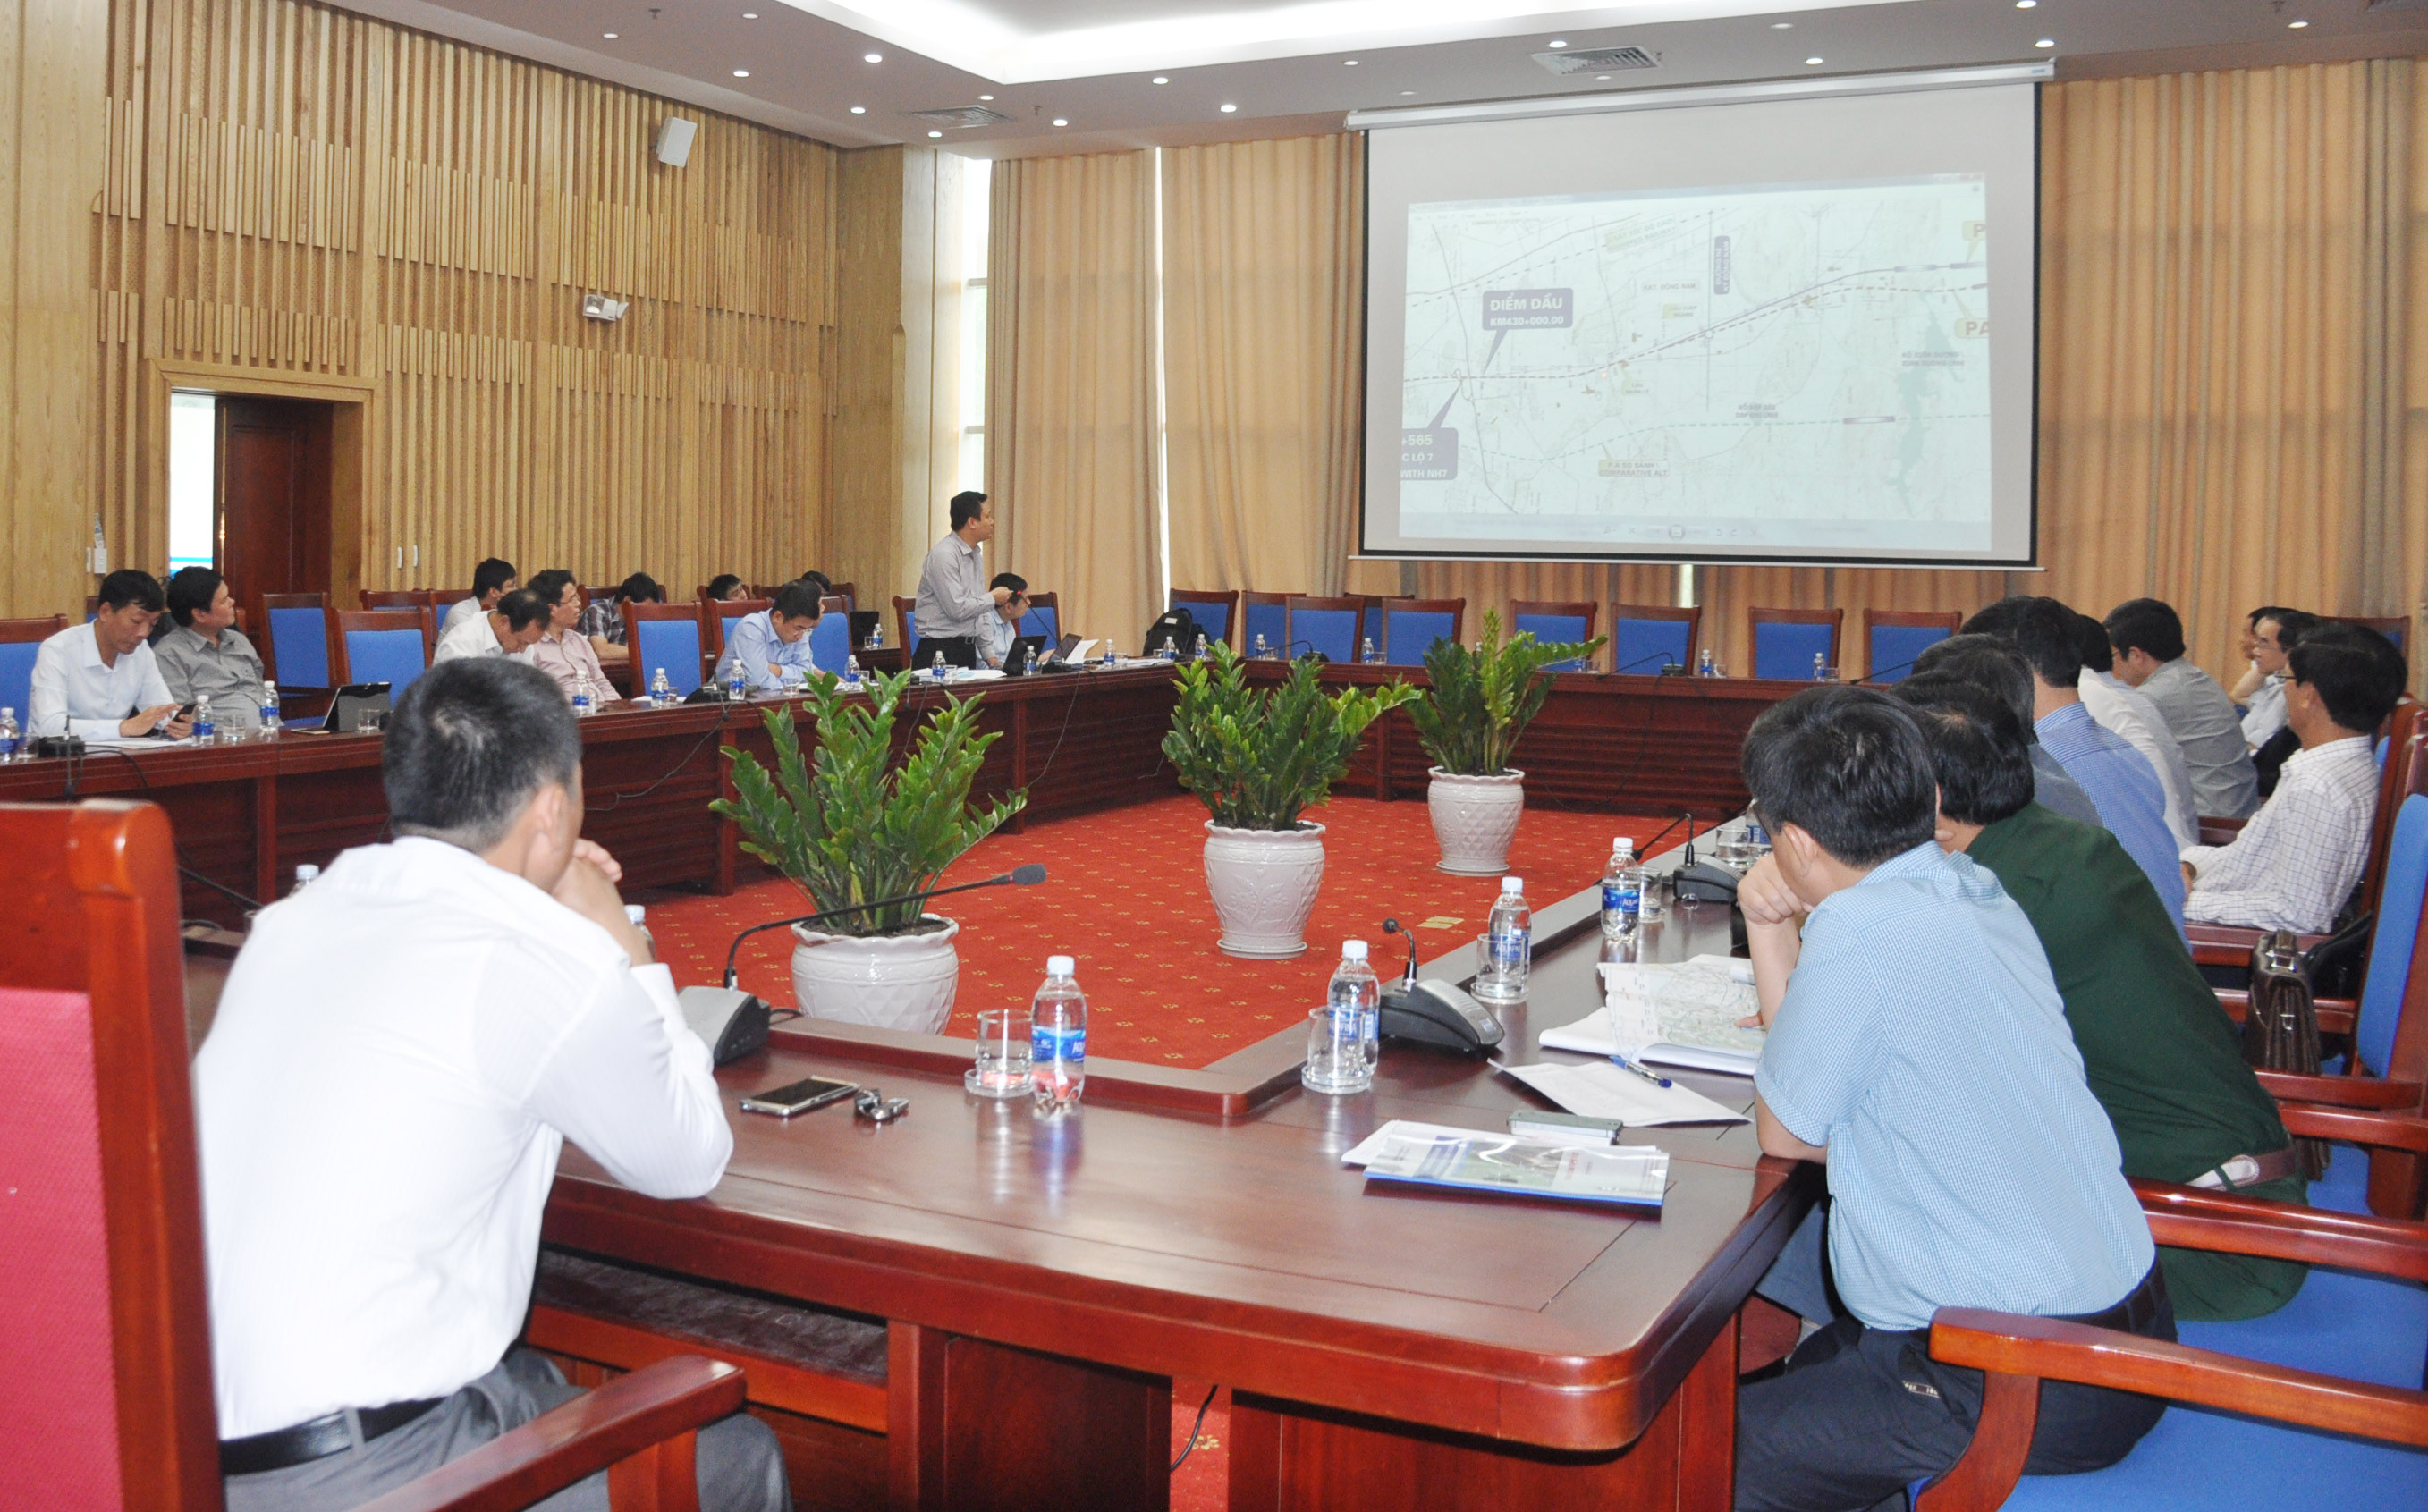 Các đại biểu nghe đơn vị tư vấn trình bày dự án cao tốc Bắc - Nam đoạn qua Nghệ An. Ảnh: Thu Huyền